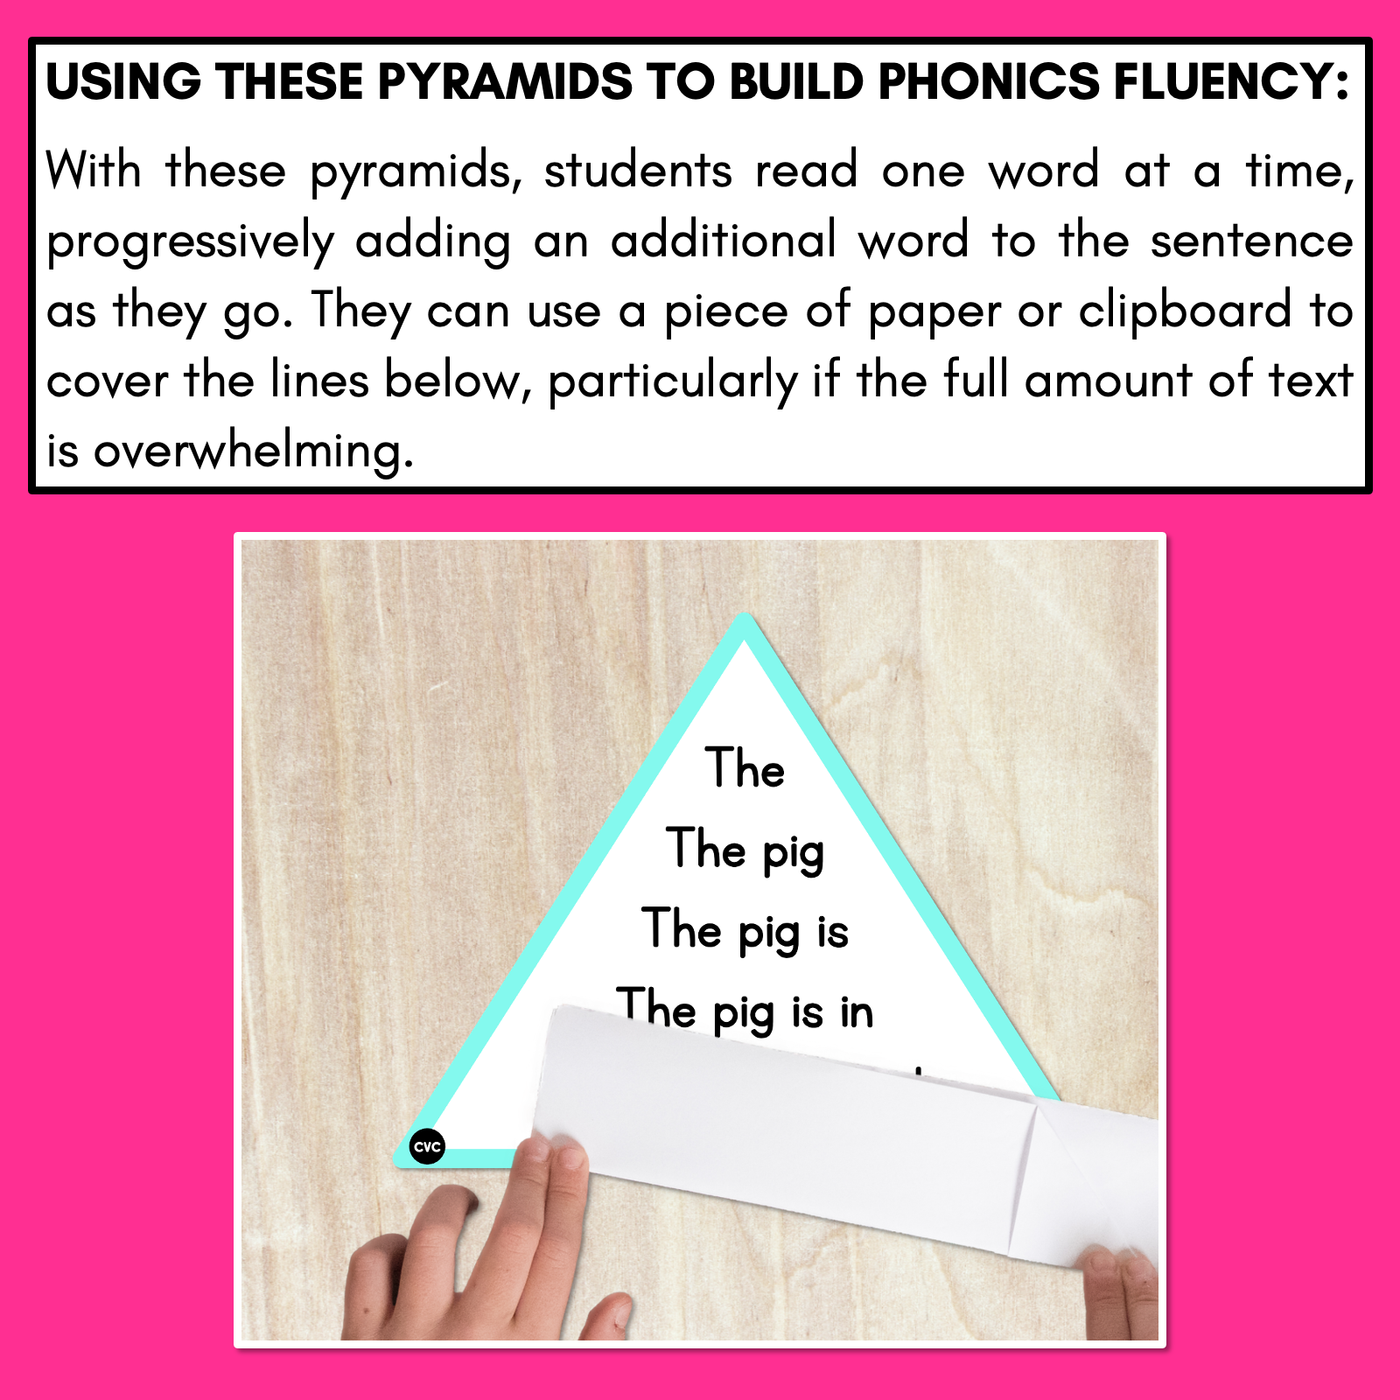 Decodable CVC Sentences Pyramids - Phonics Fluency